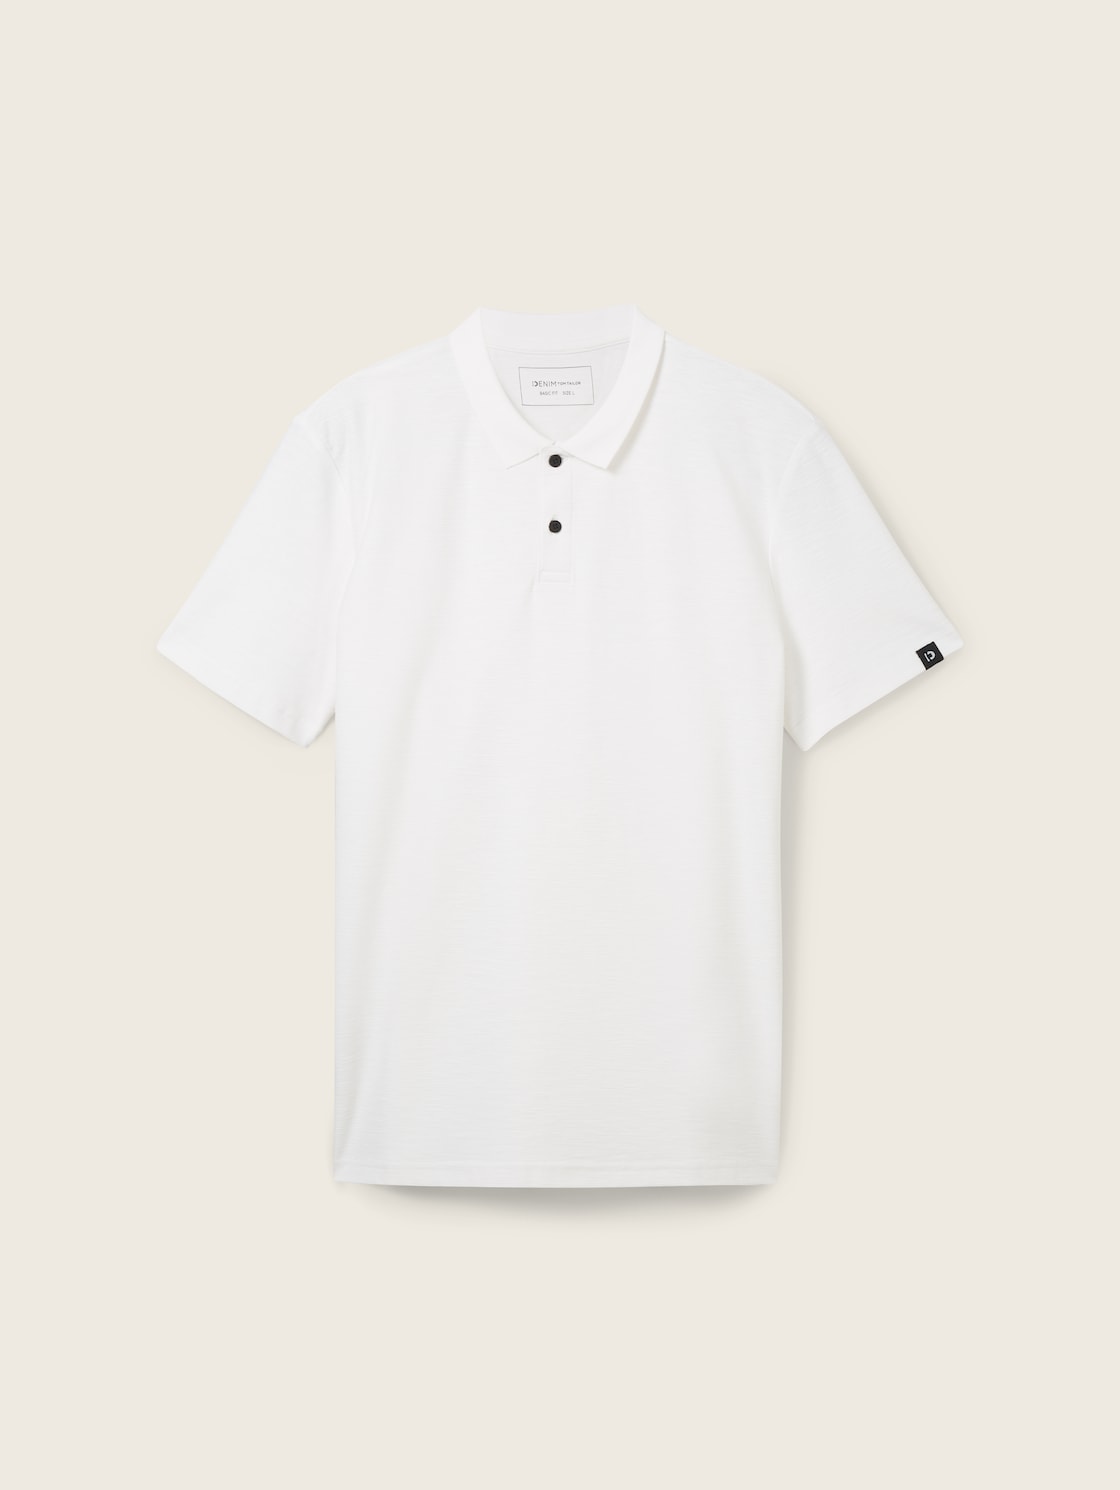 TOM TAILOR DENIM Herren Poloshirt mit Struktur, weiß, Uni, Gr. XL von Tom Tailor Denim